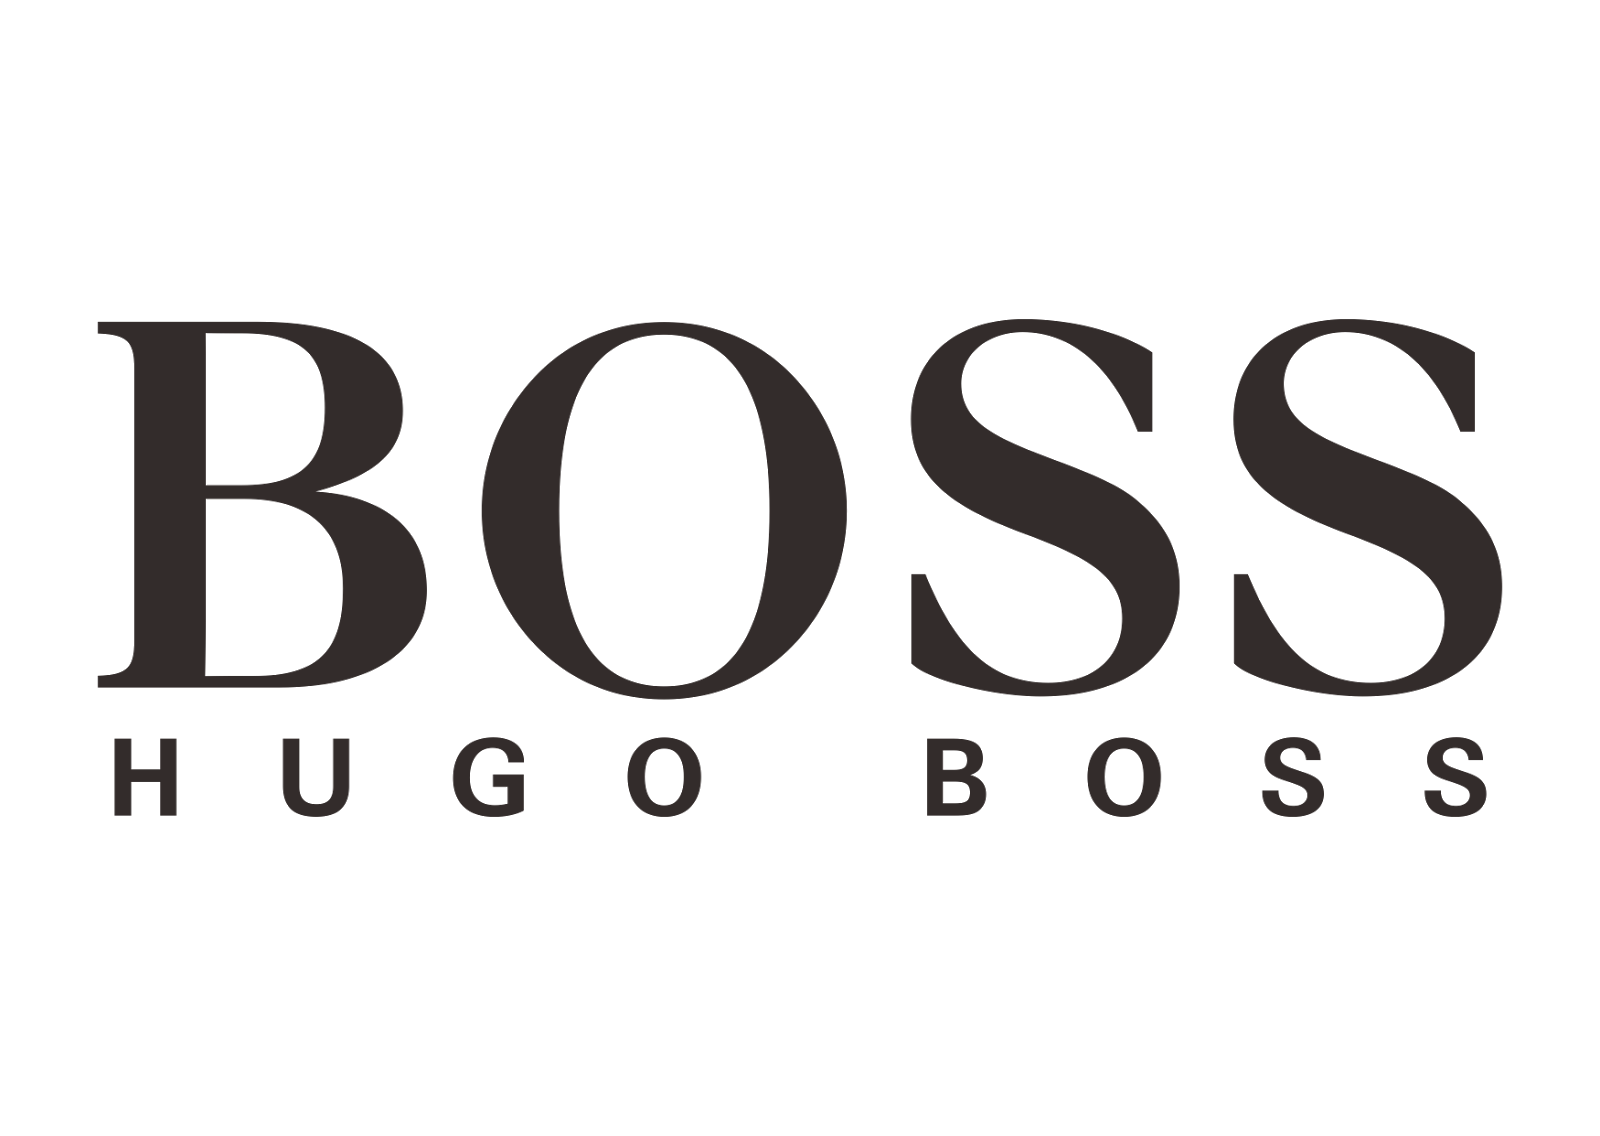 Boss Png Logo - Free Logo Image